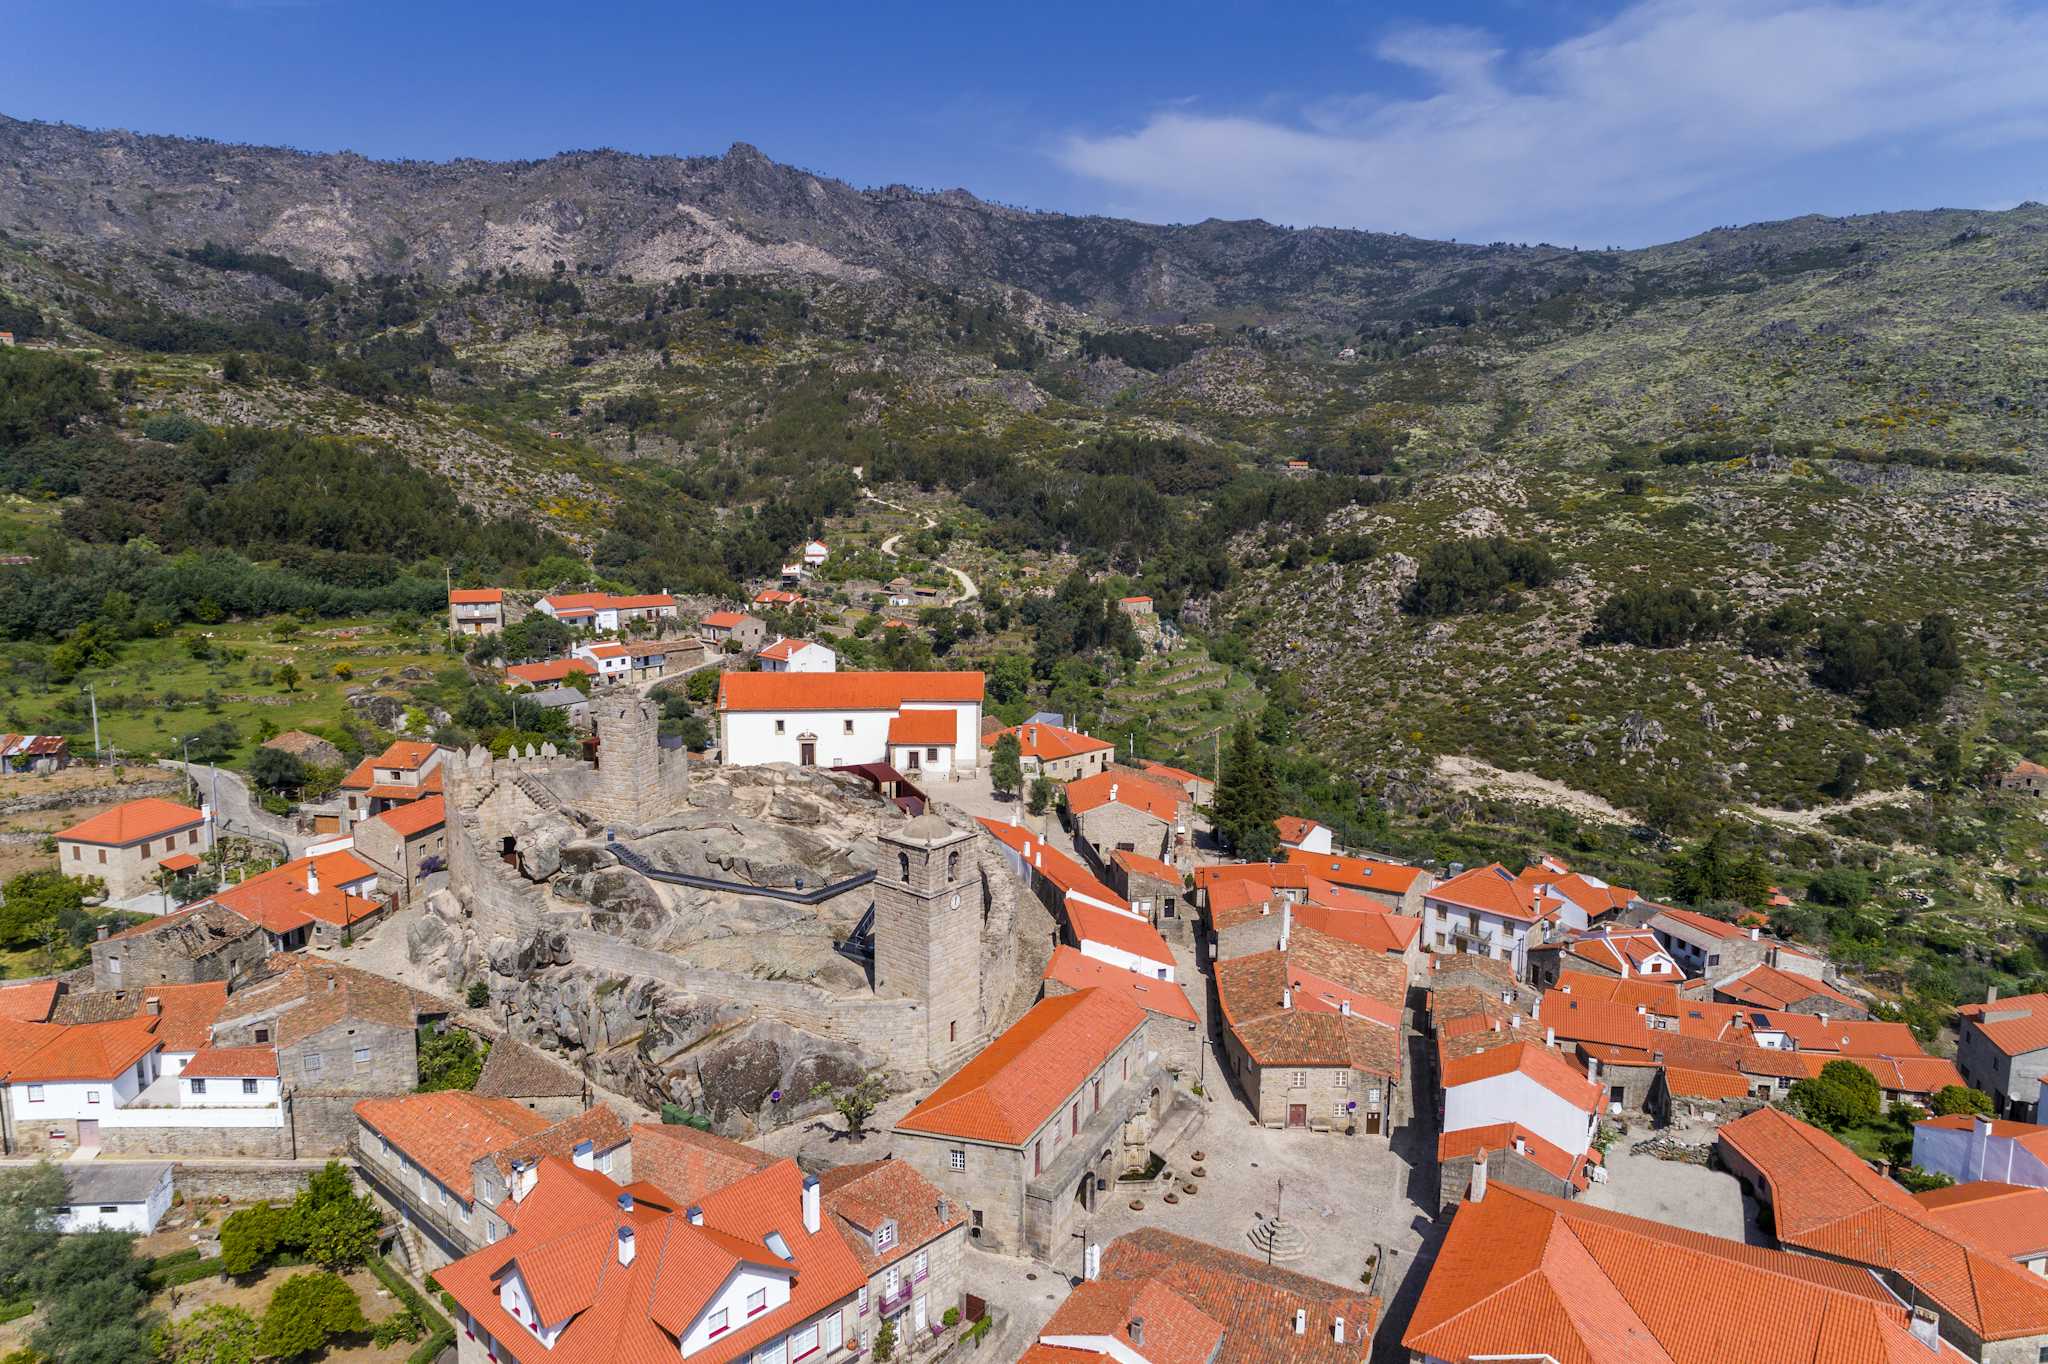 Castelo Novo Historical Village